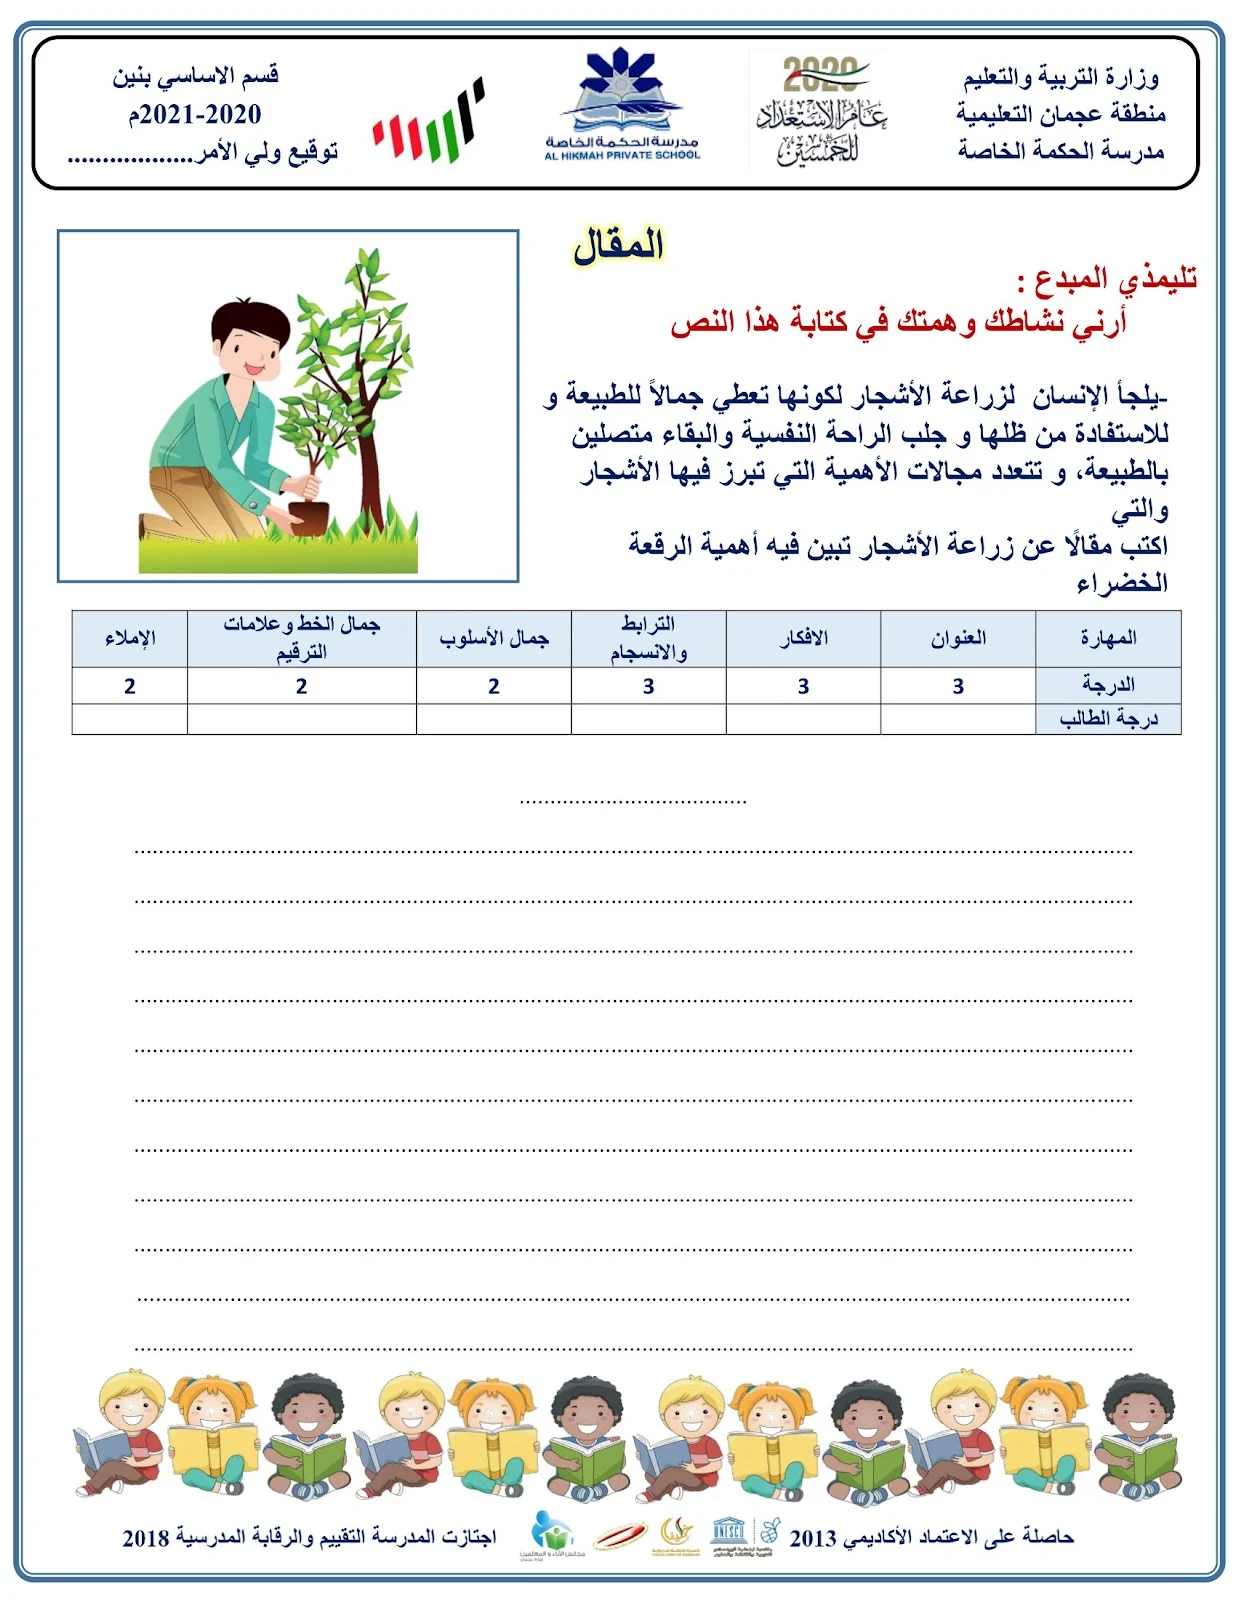 مذكرة التعبير الكتابي والإملاء العربي برابط مباشر pdf